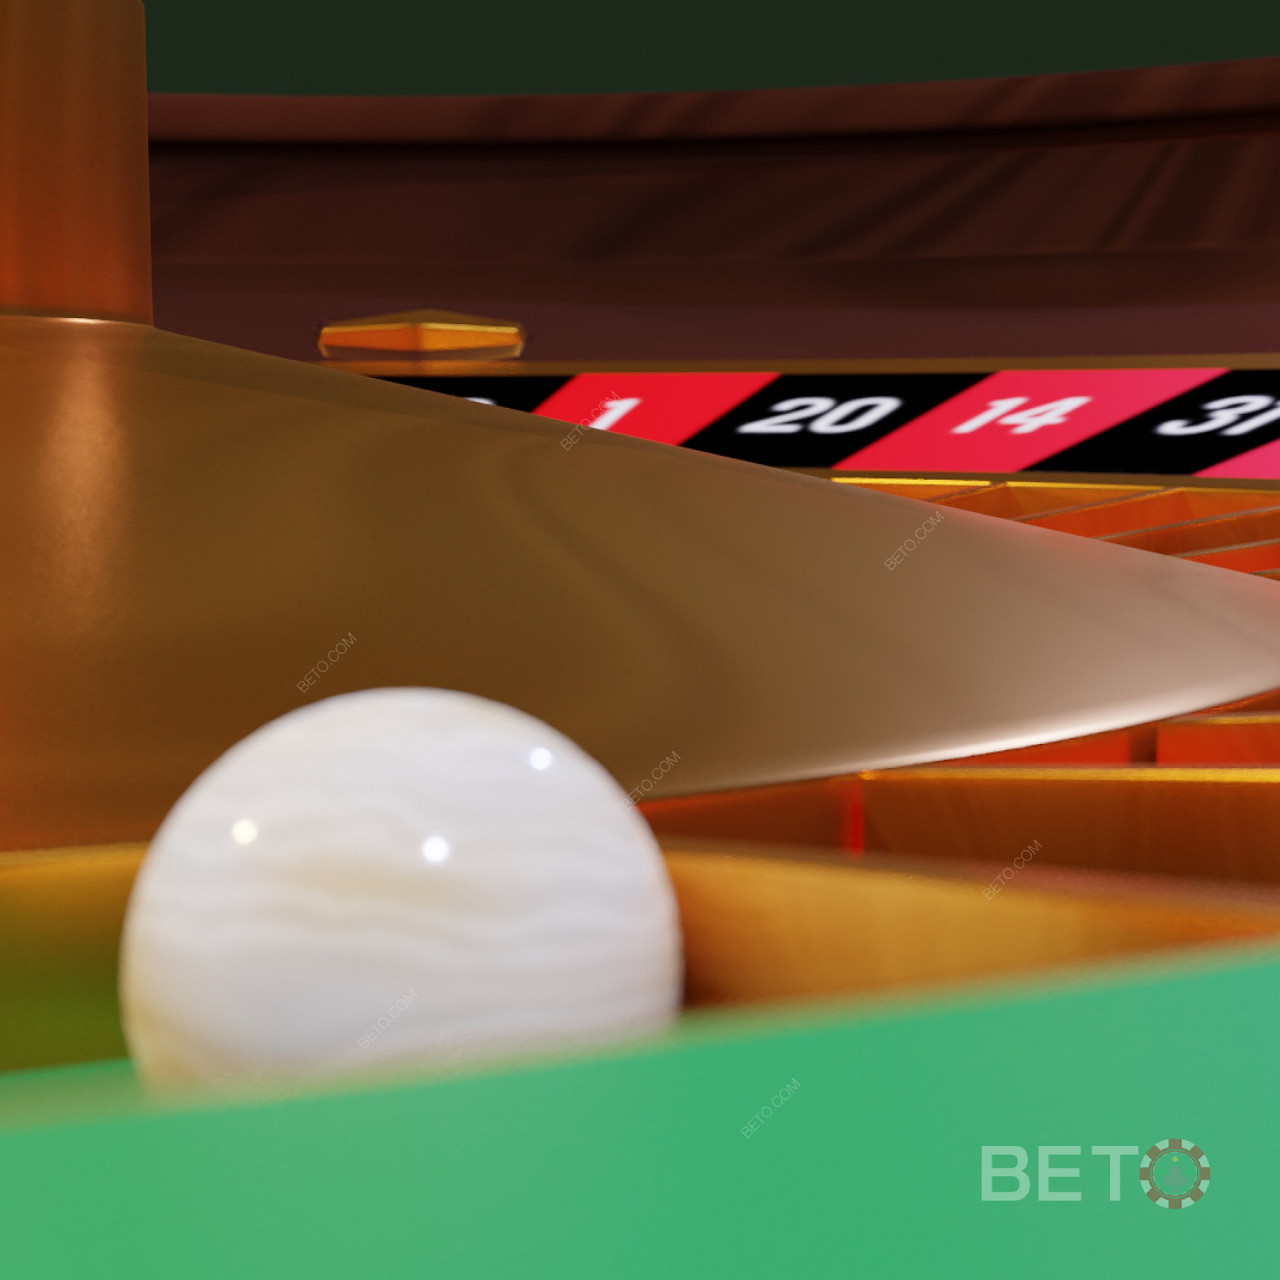 Fakta om roulette-ballen og hvordan den påvirker live casino-spill.